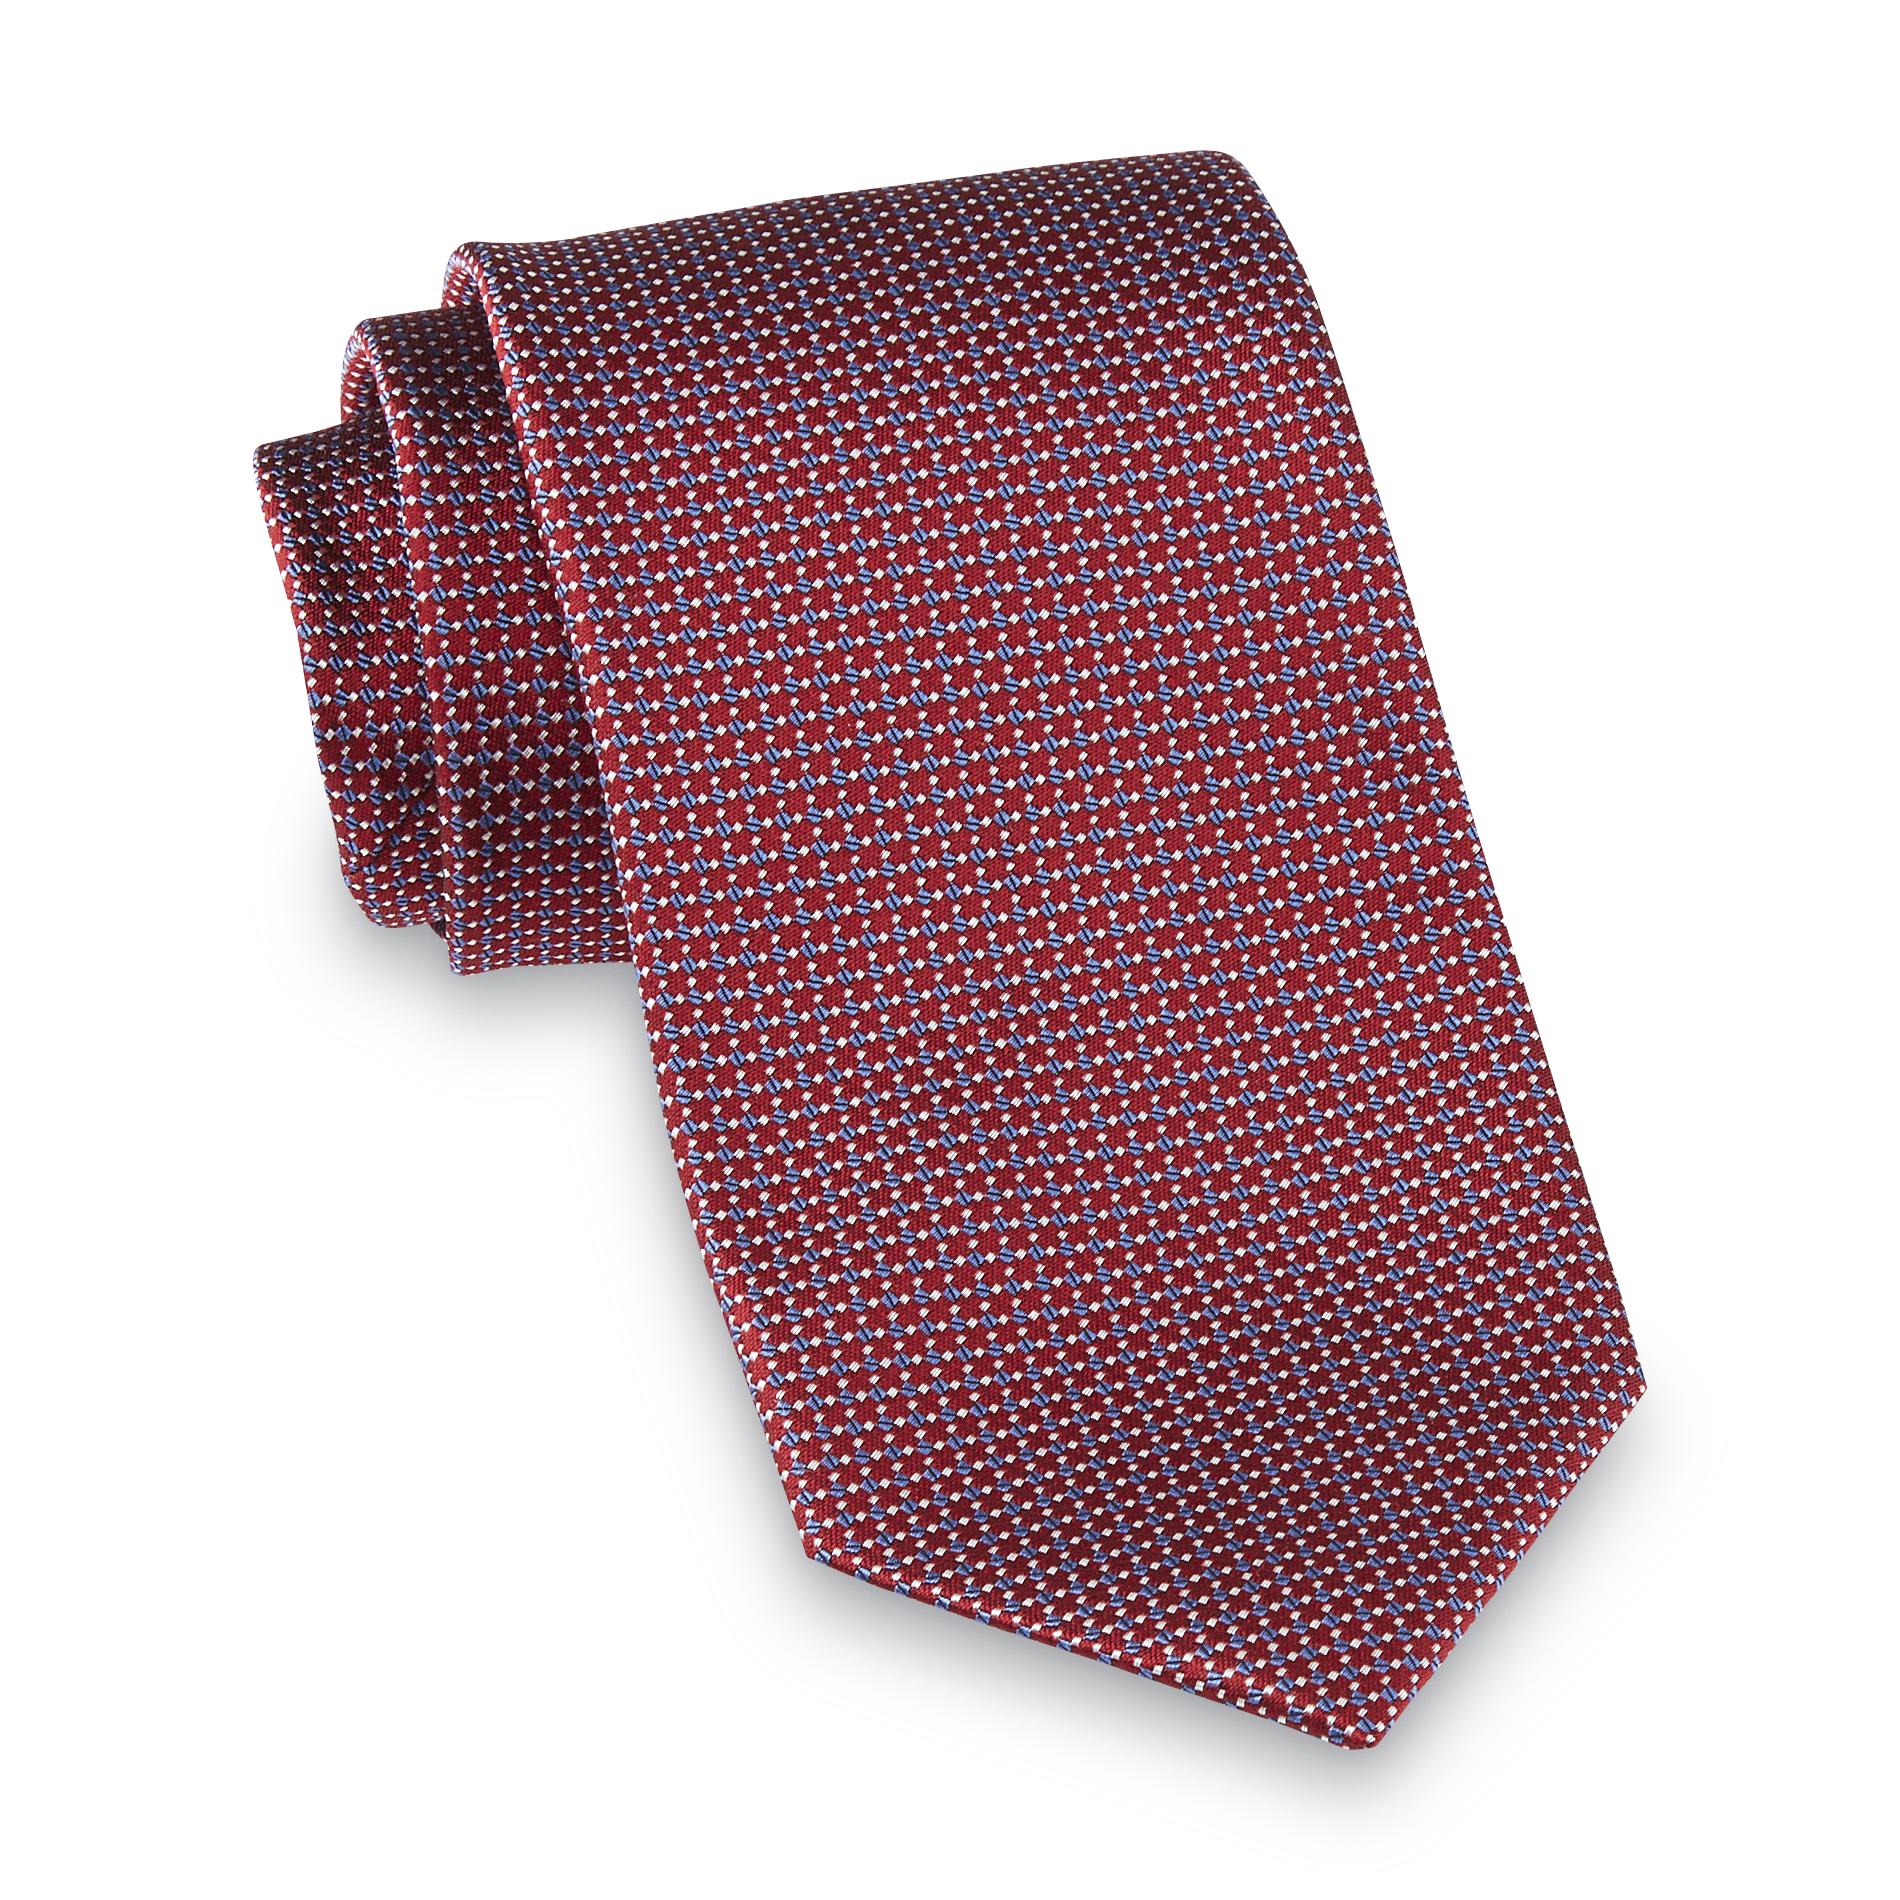 Dockers Men's Necktie - Geometric Pindot